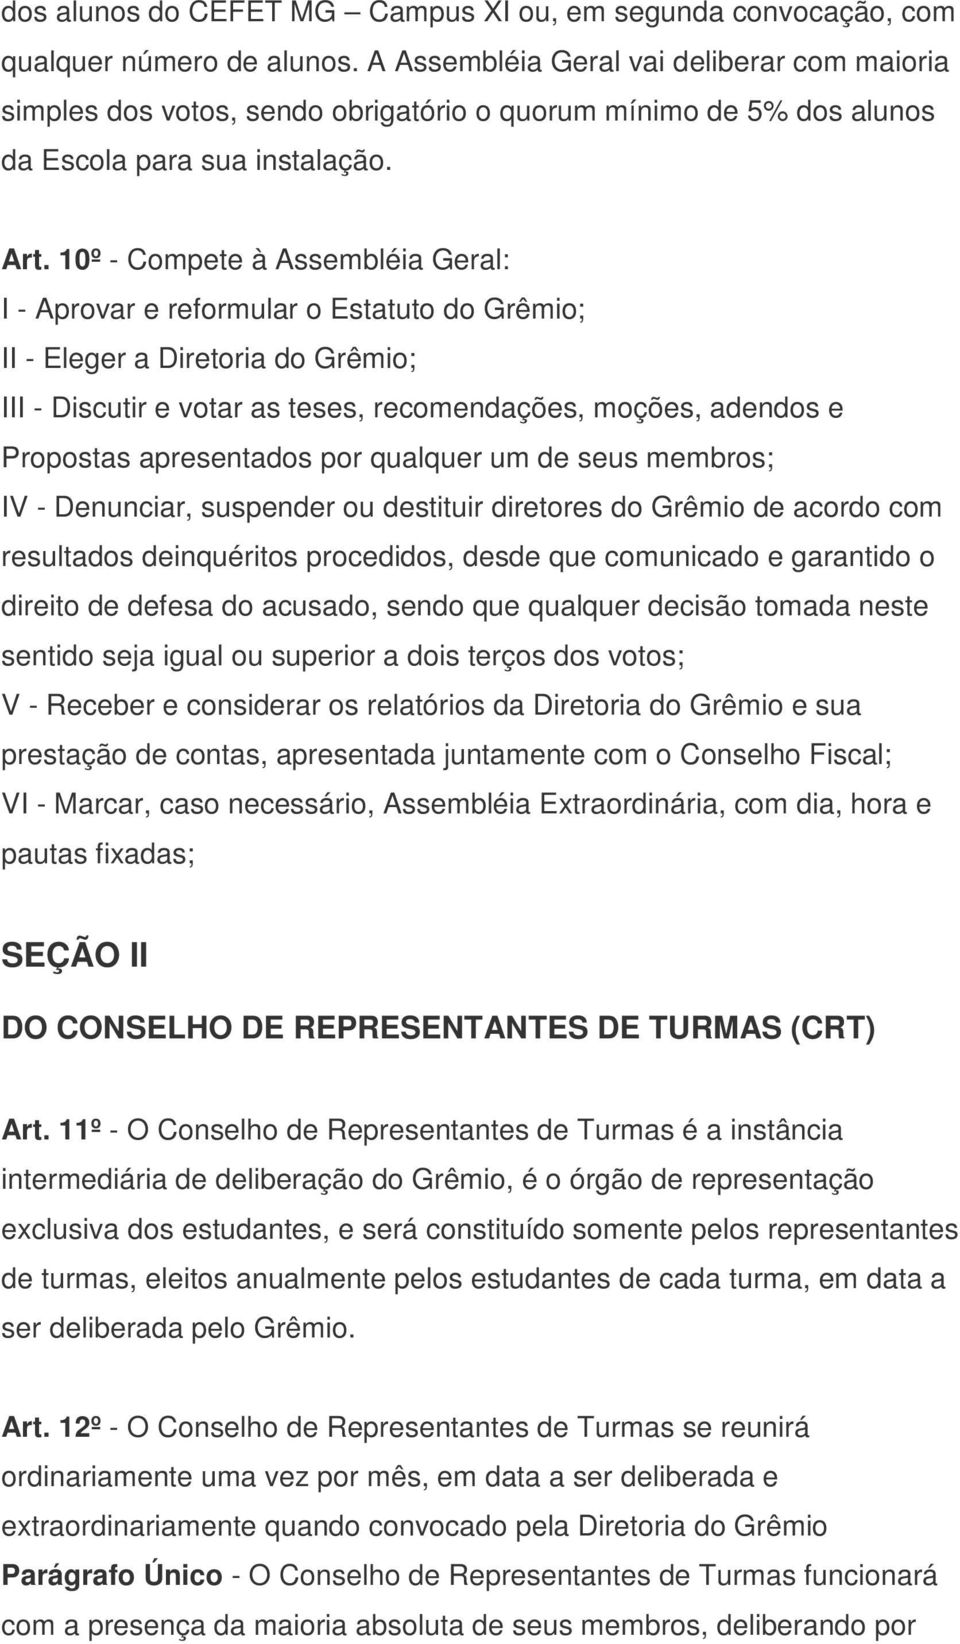 10º - Compete à Assembléia Geral: I - Aprovar e reformular o Estatuto do Grêmio; II - Eleger a Diretoria do Grêmio; III - Discutir e votar as teses, recomendações, moções, adendos e Propostas